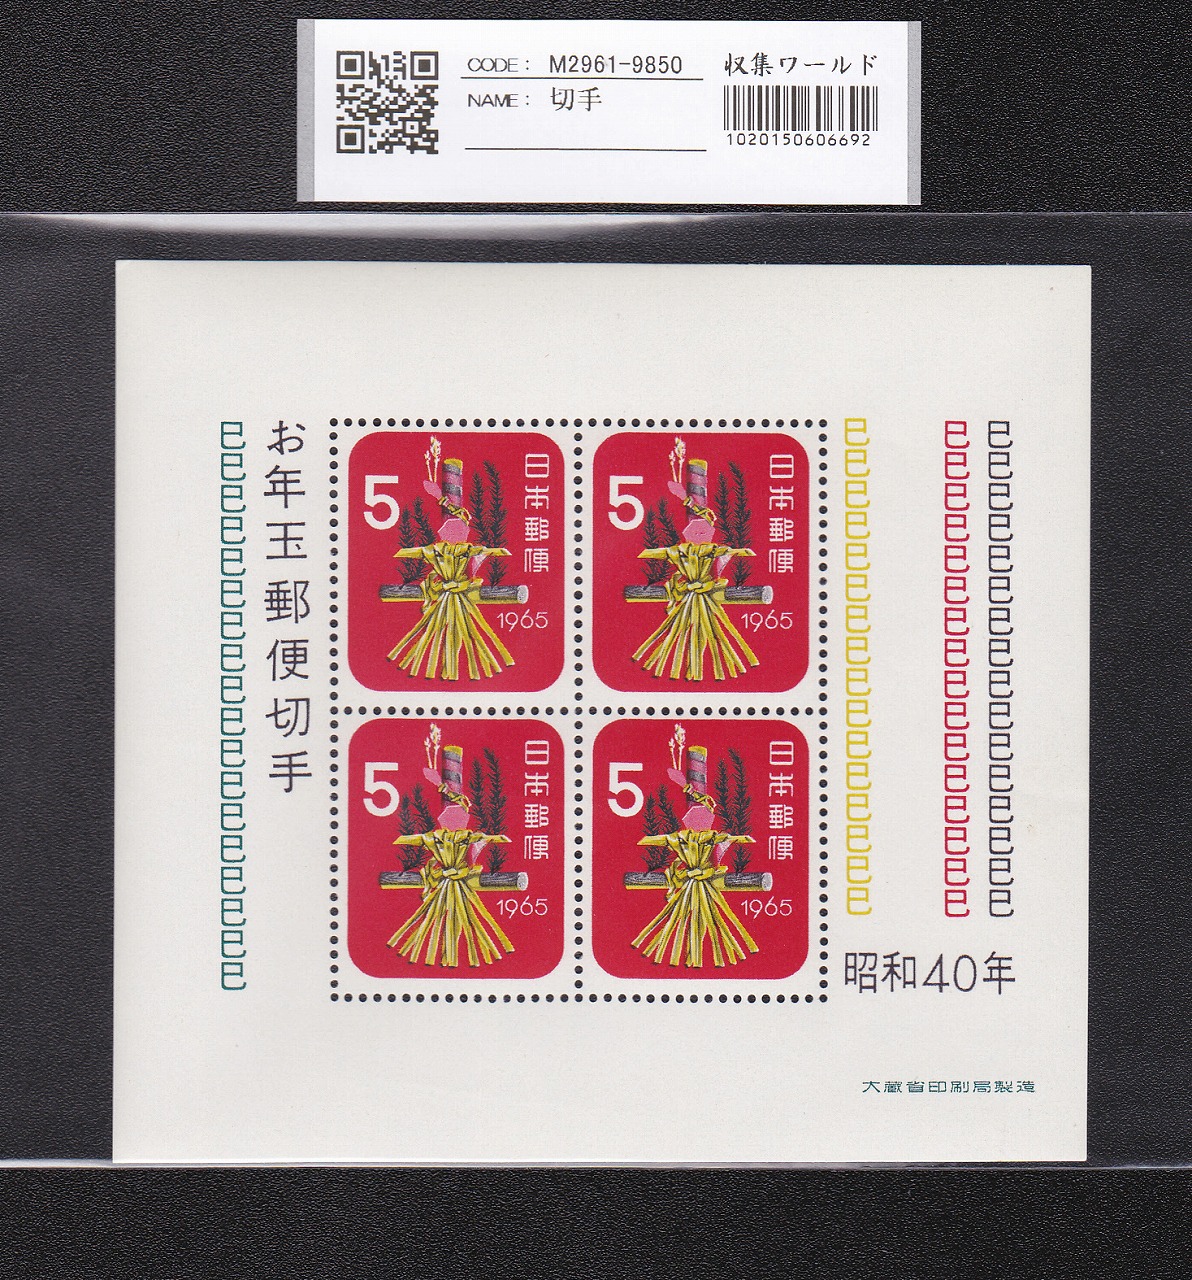 お年玉 郵便切手 昭和40年(1965)大蔵省発行 5円×4枚小型シート 未使用